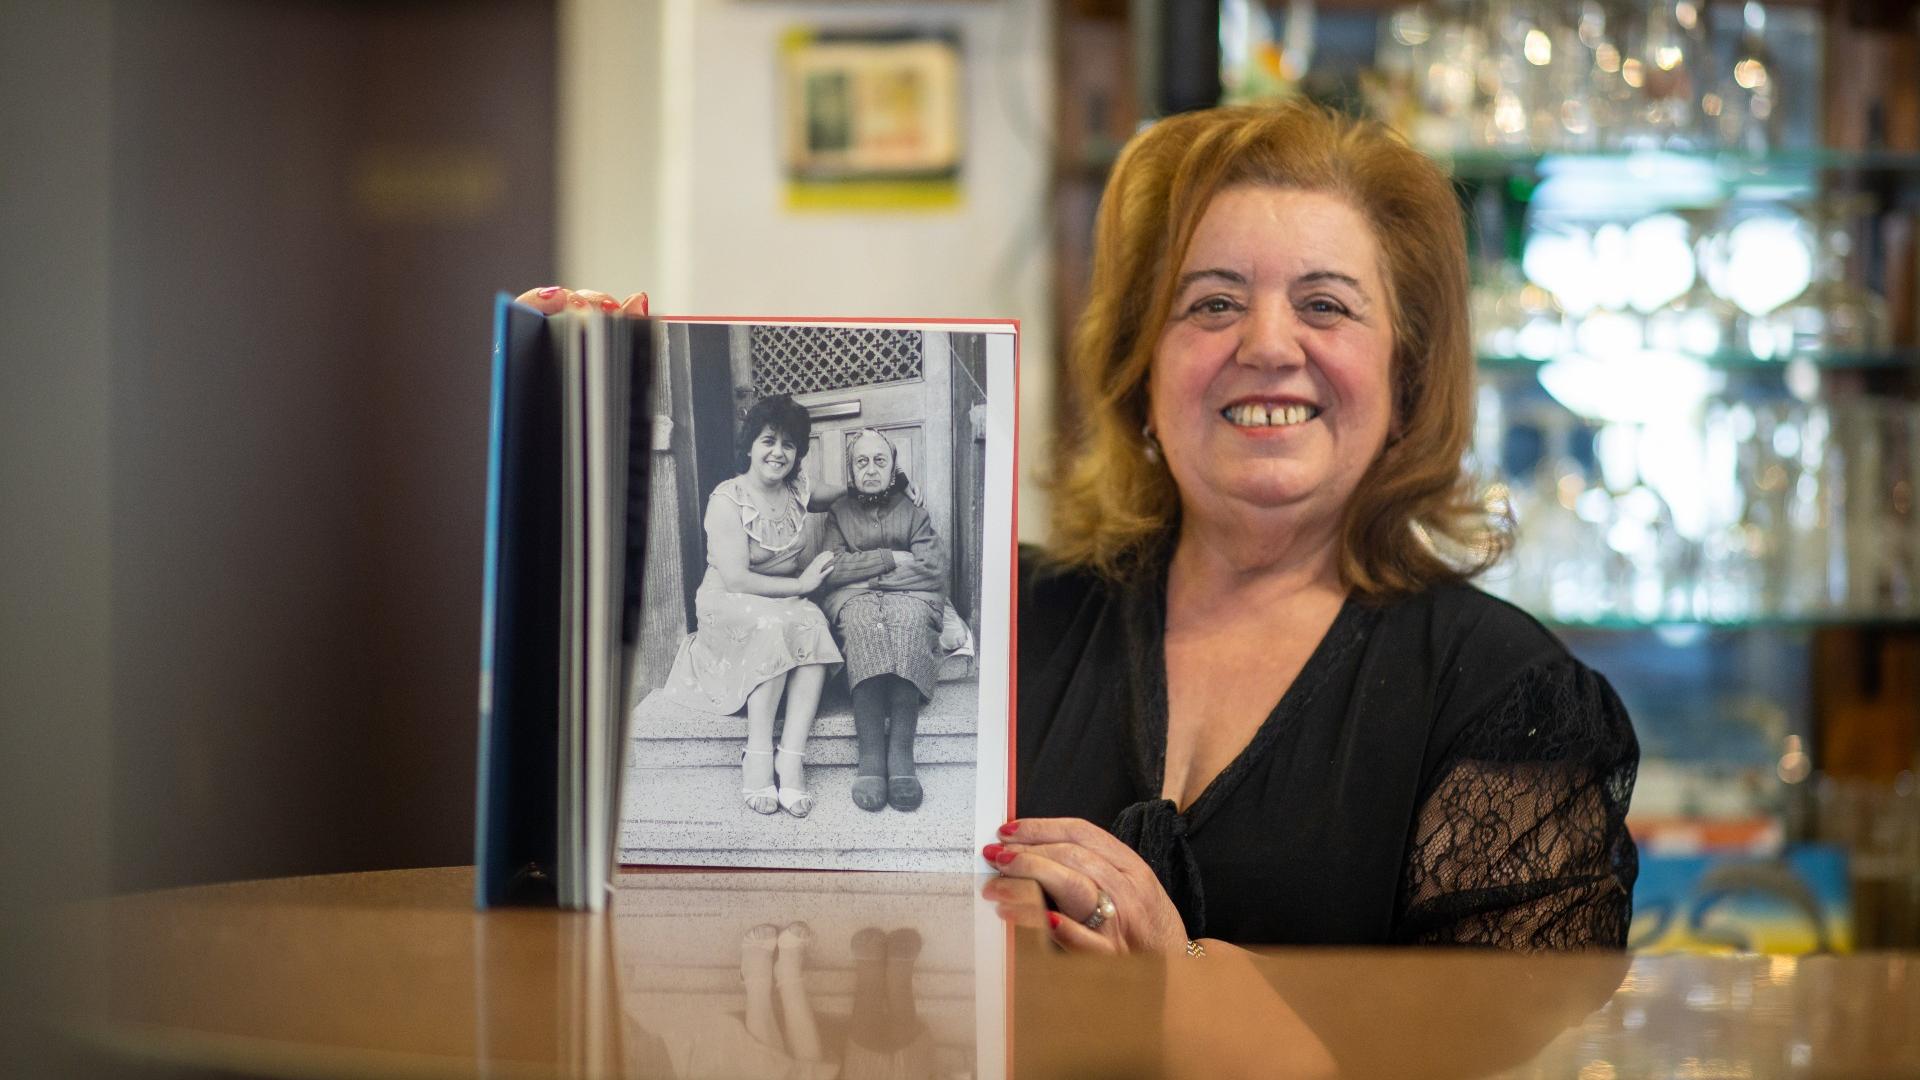 Inês Afonso é a proprietária do café desde 1985. Na foto, mostra uma imagem sua ao lado de uma vizinha, parte de uma exposição.